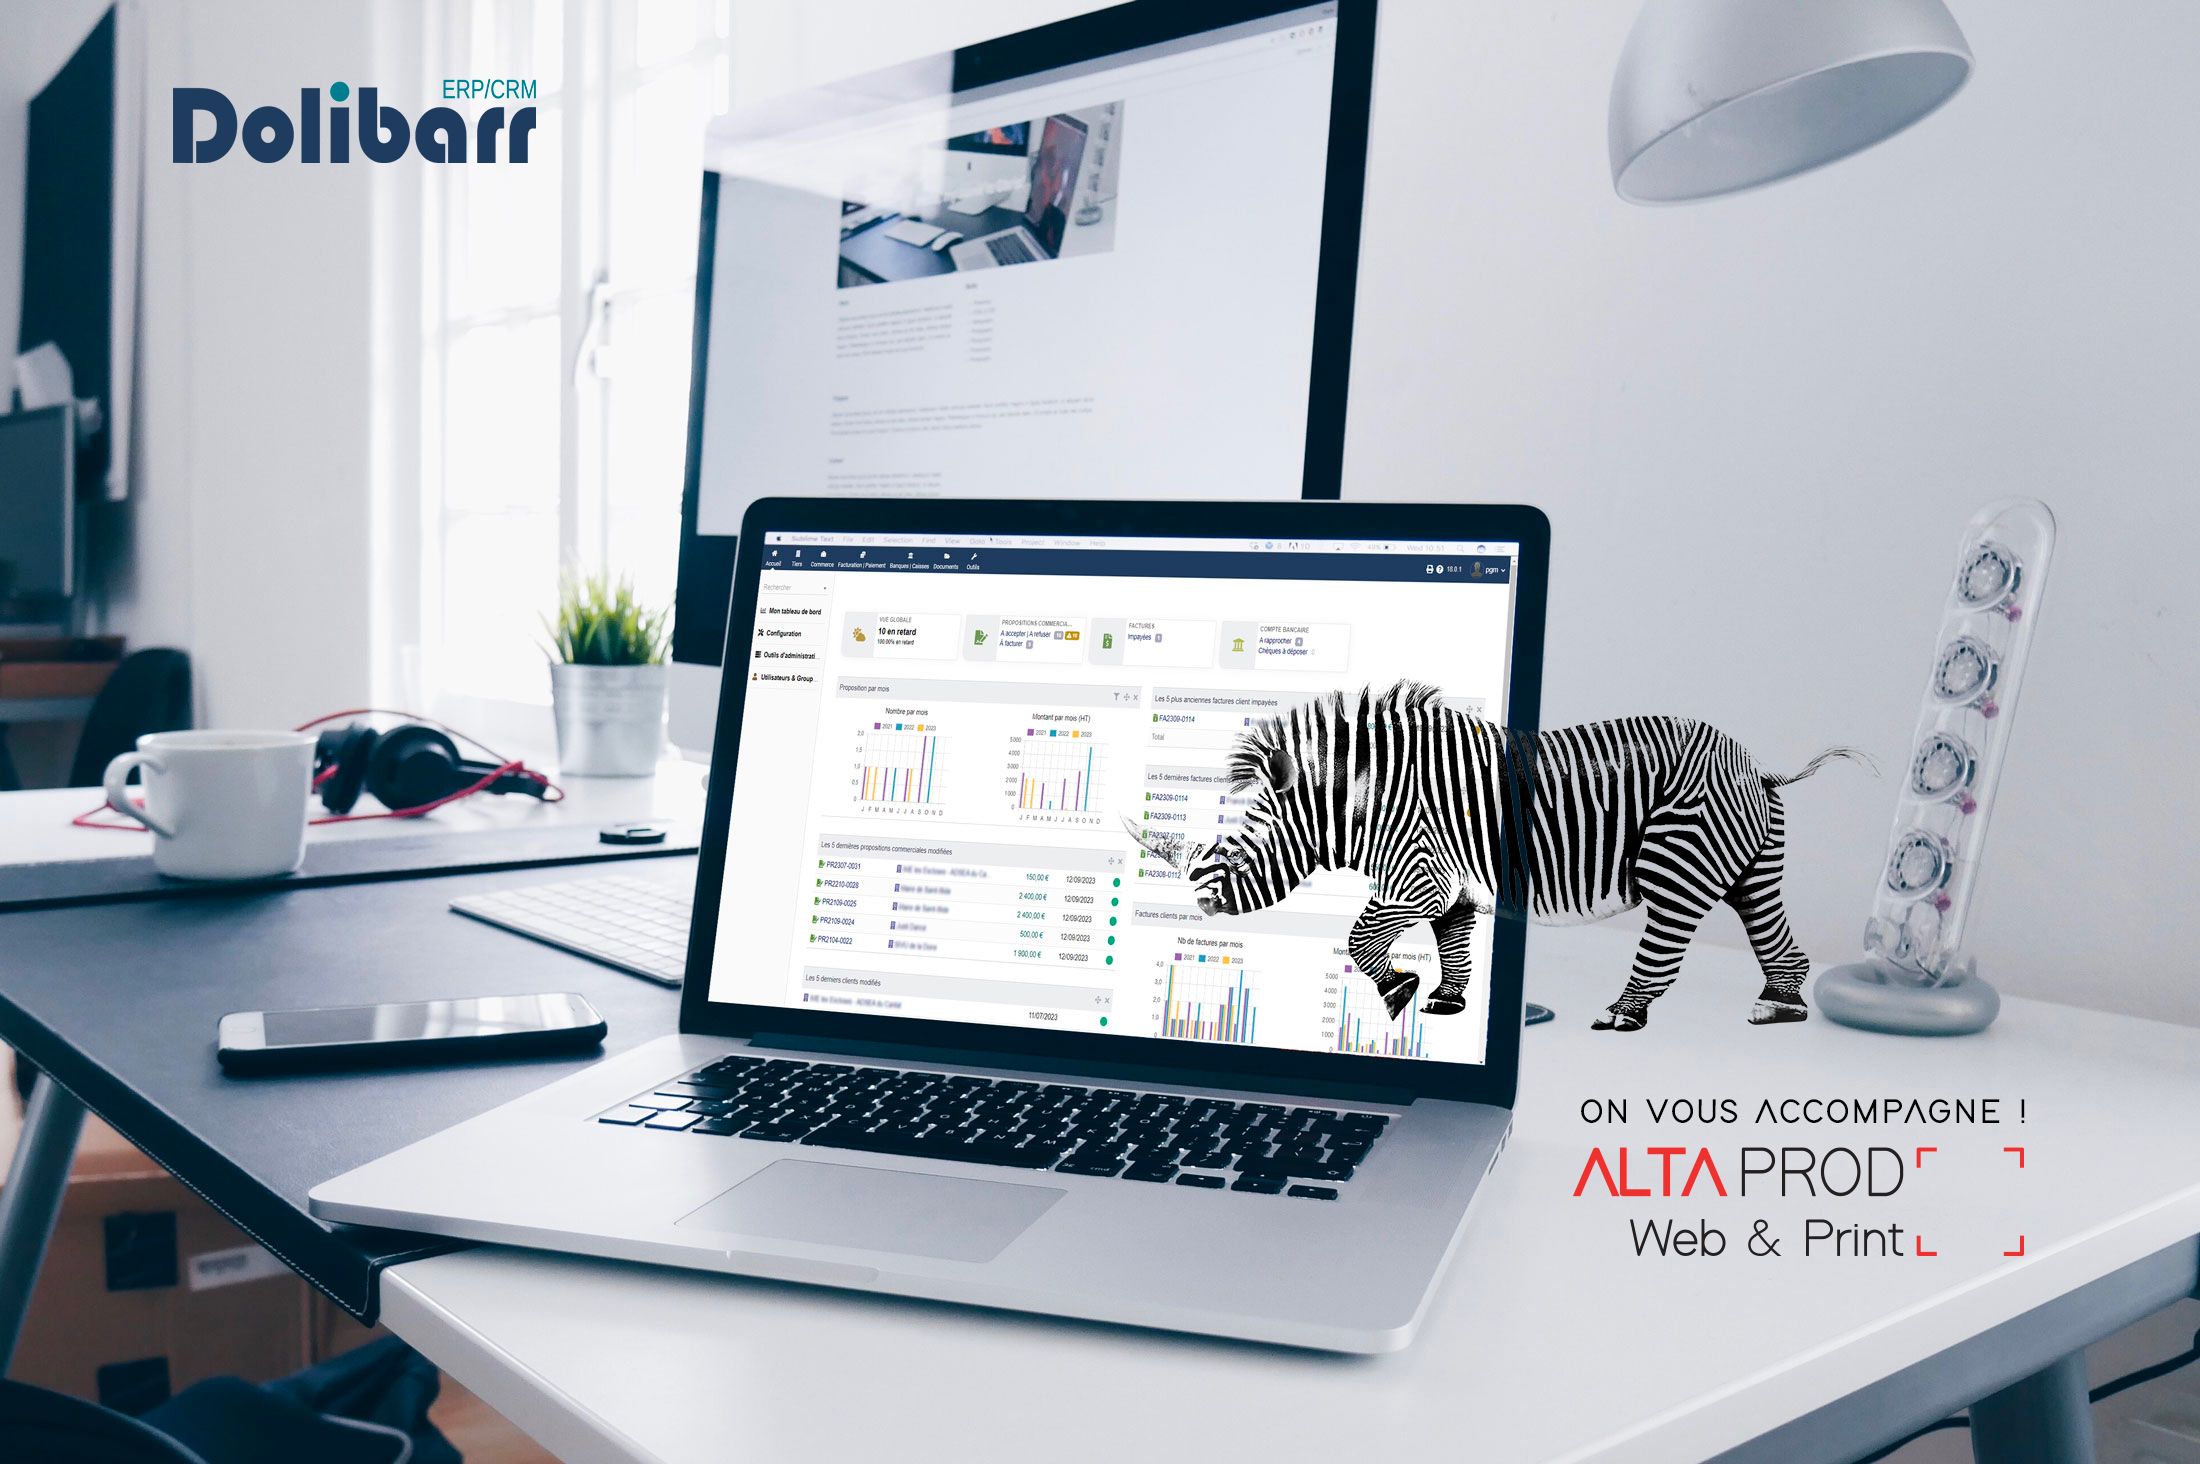 ALTAprod aide ses clients entreprises dans la mise en place et la gestion d'un logiciel de vente, relation client et comptabilité : dolibarr.